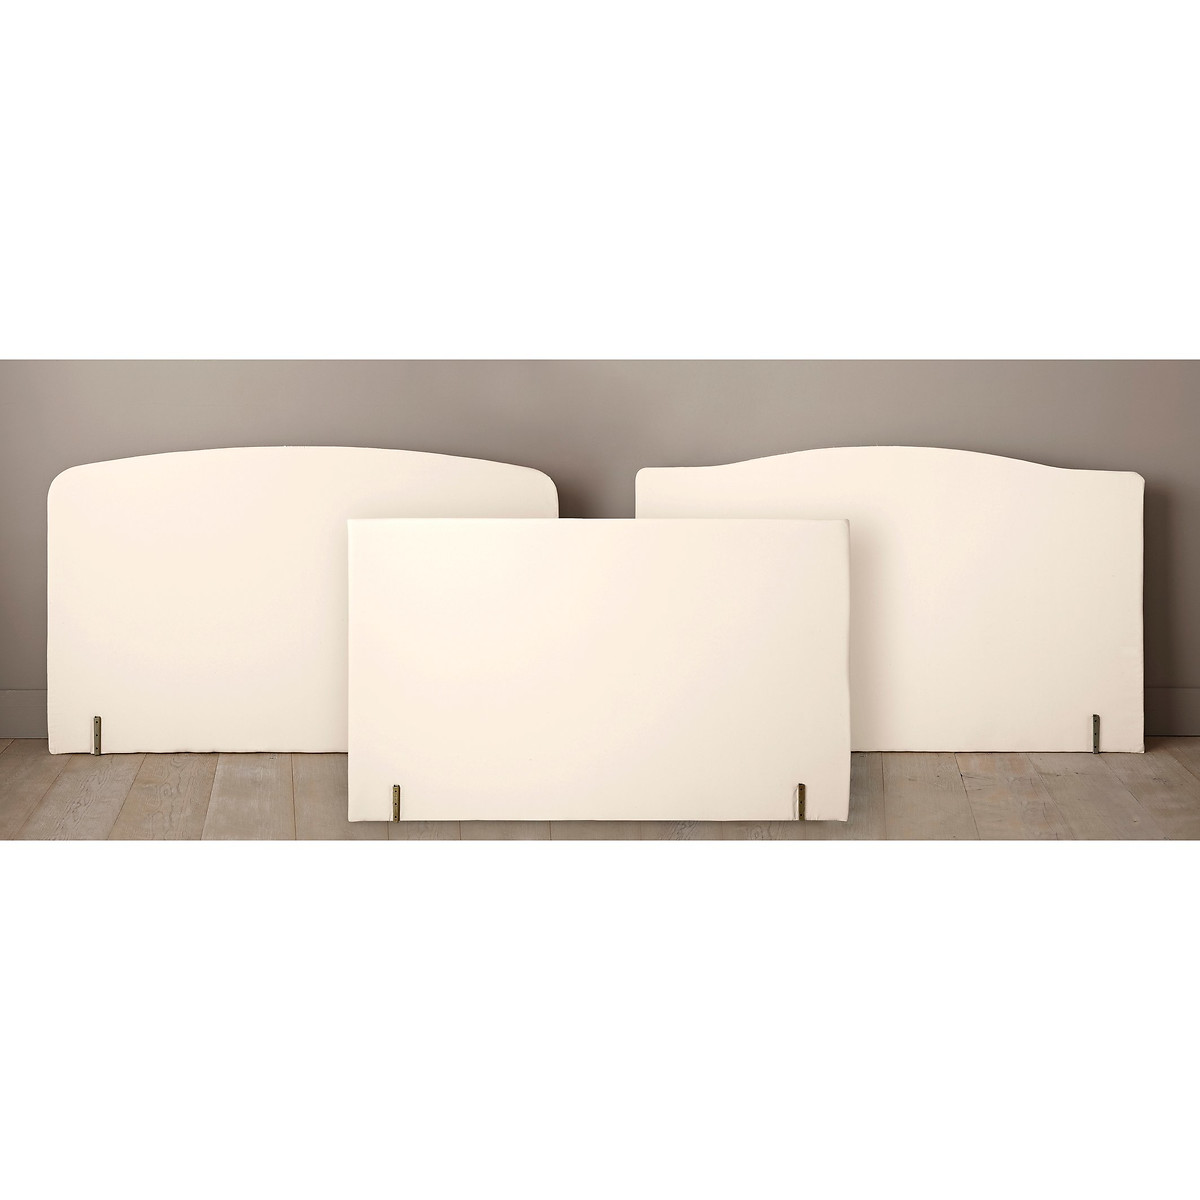 Изголовье La Redoute Кровати с обивкой изогнутой формы 160 см белый, размер 160 см - фото 2